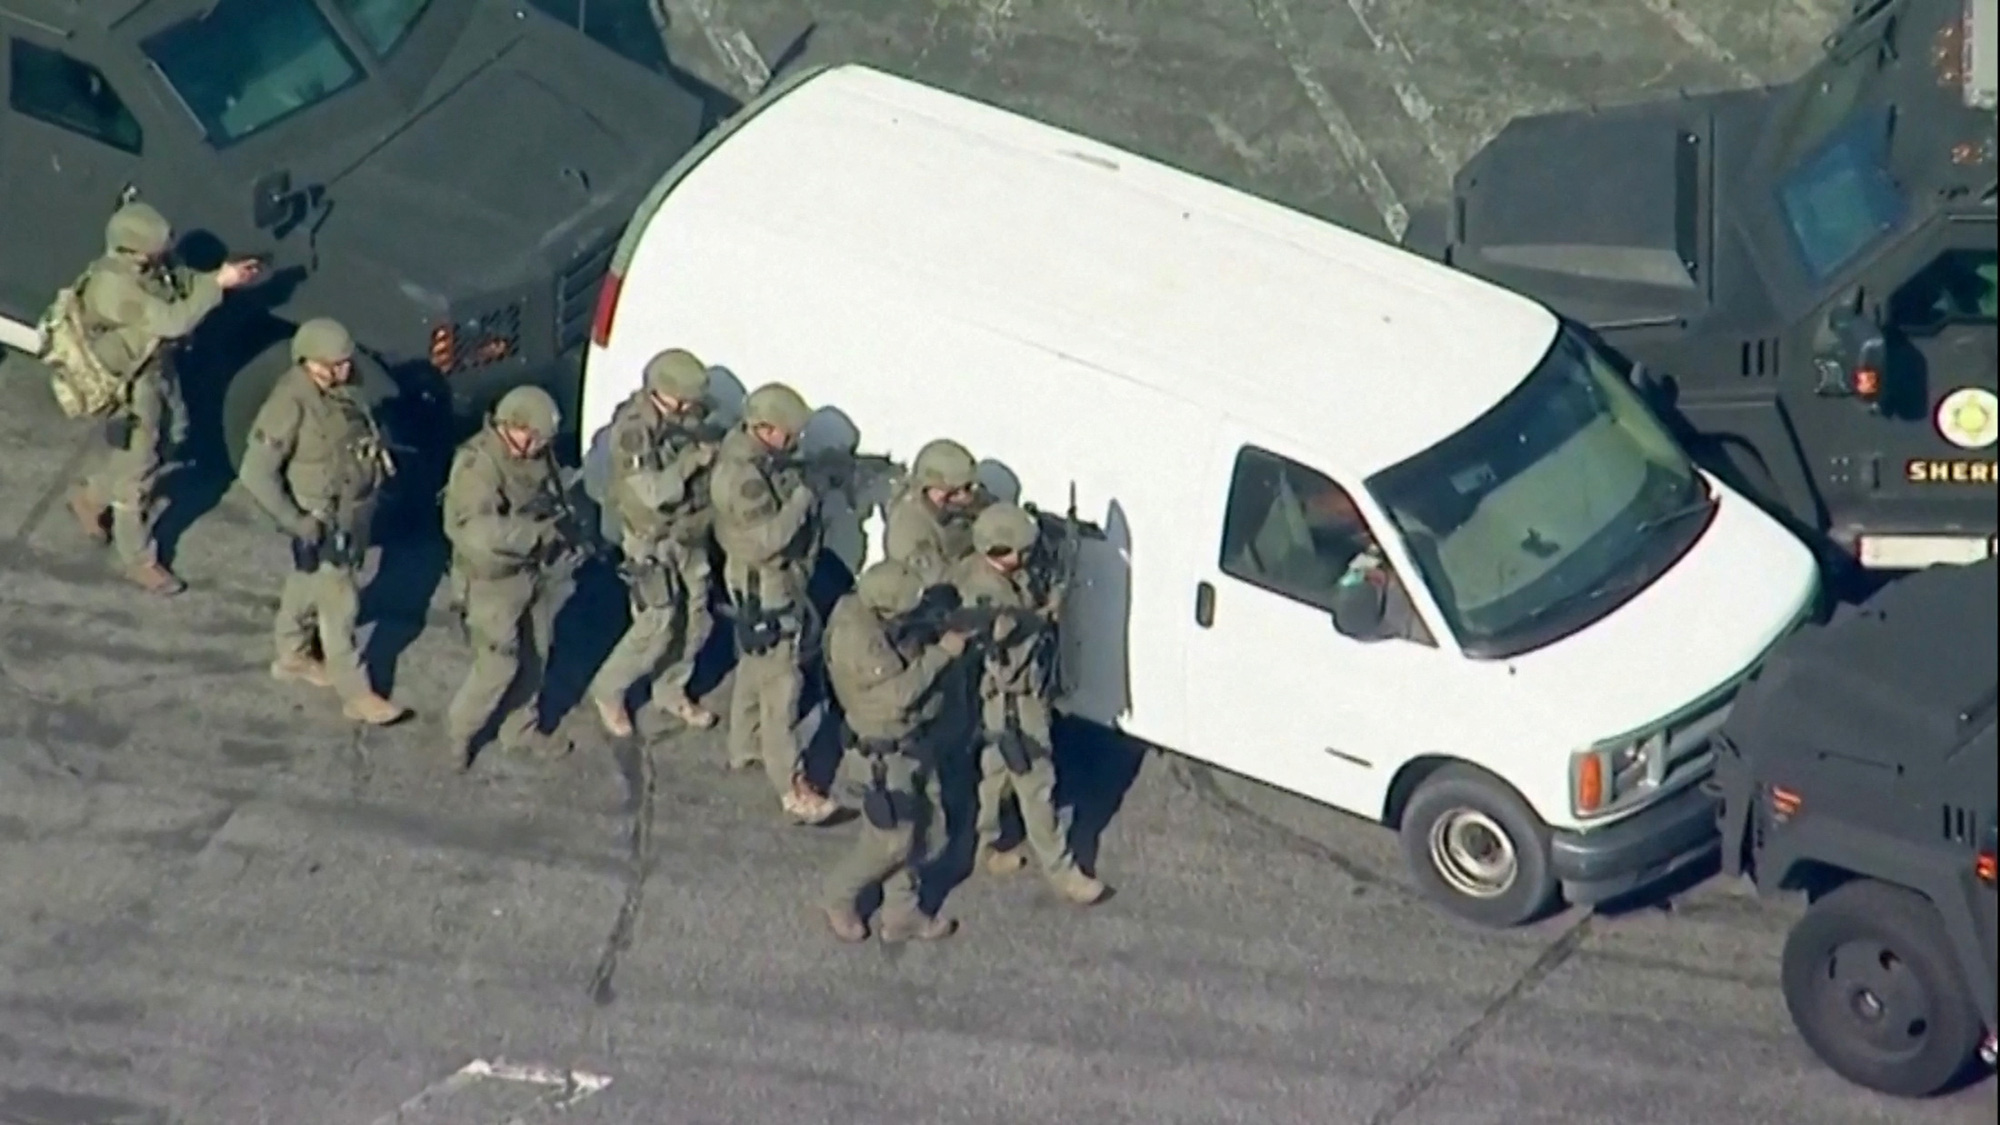 Cảnh sát sử dụng xe bọc thép bao vây xe tải chở hàng màu trắng, được cho là có liên quan đến nghi phạm xả súng hàng loạt ở Monterey Park, bang California, ngày 22-1 - Ảnh: REUTERS